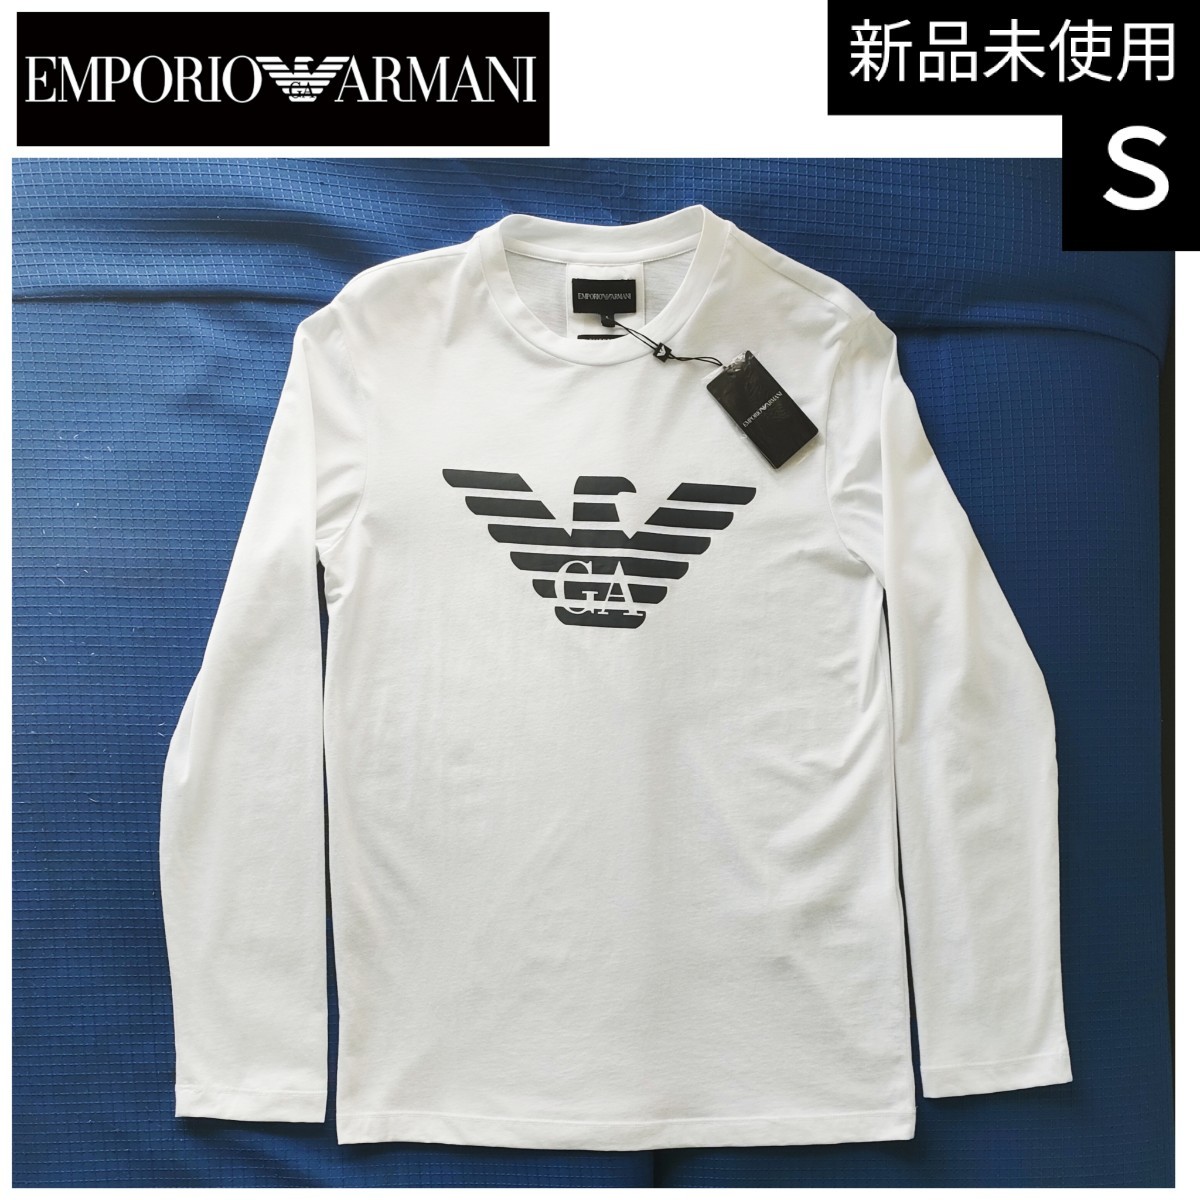 人気ブランドを Tシャツ アルマーニ エンポリオ メンズ 新品 00020